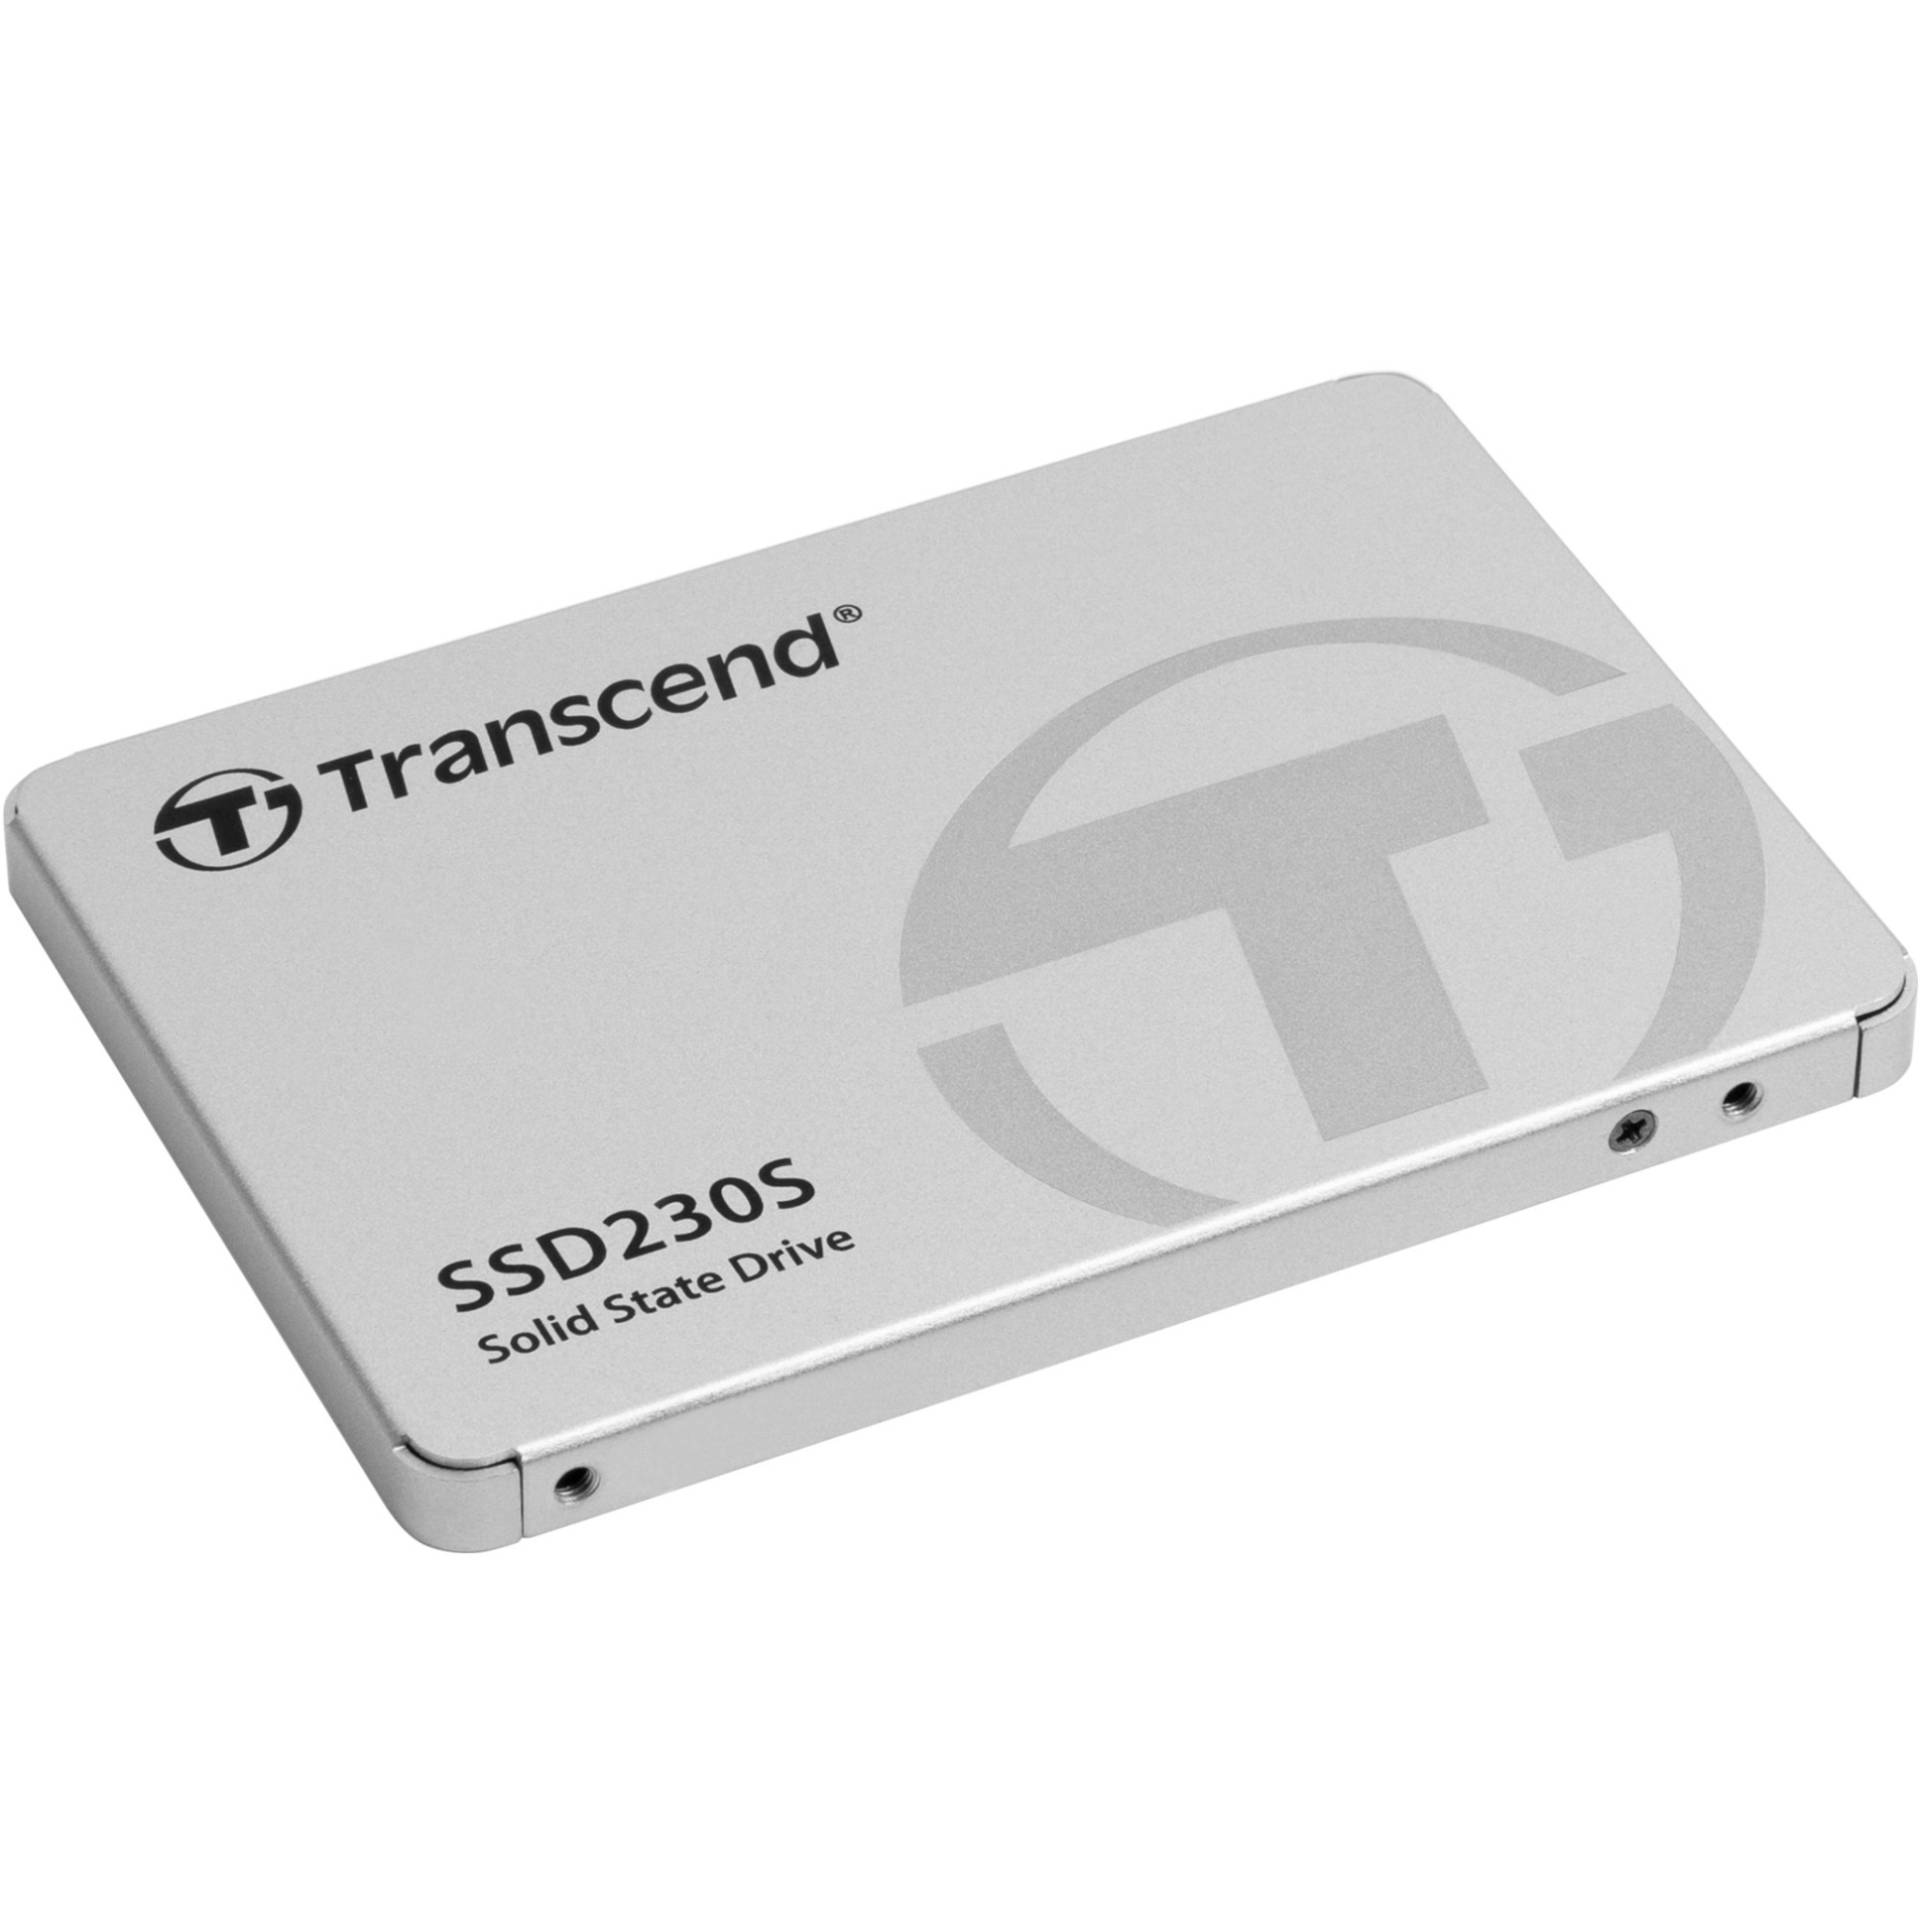 SSD230S 4 TB von Transcend